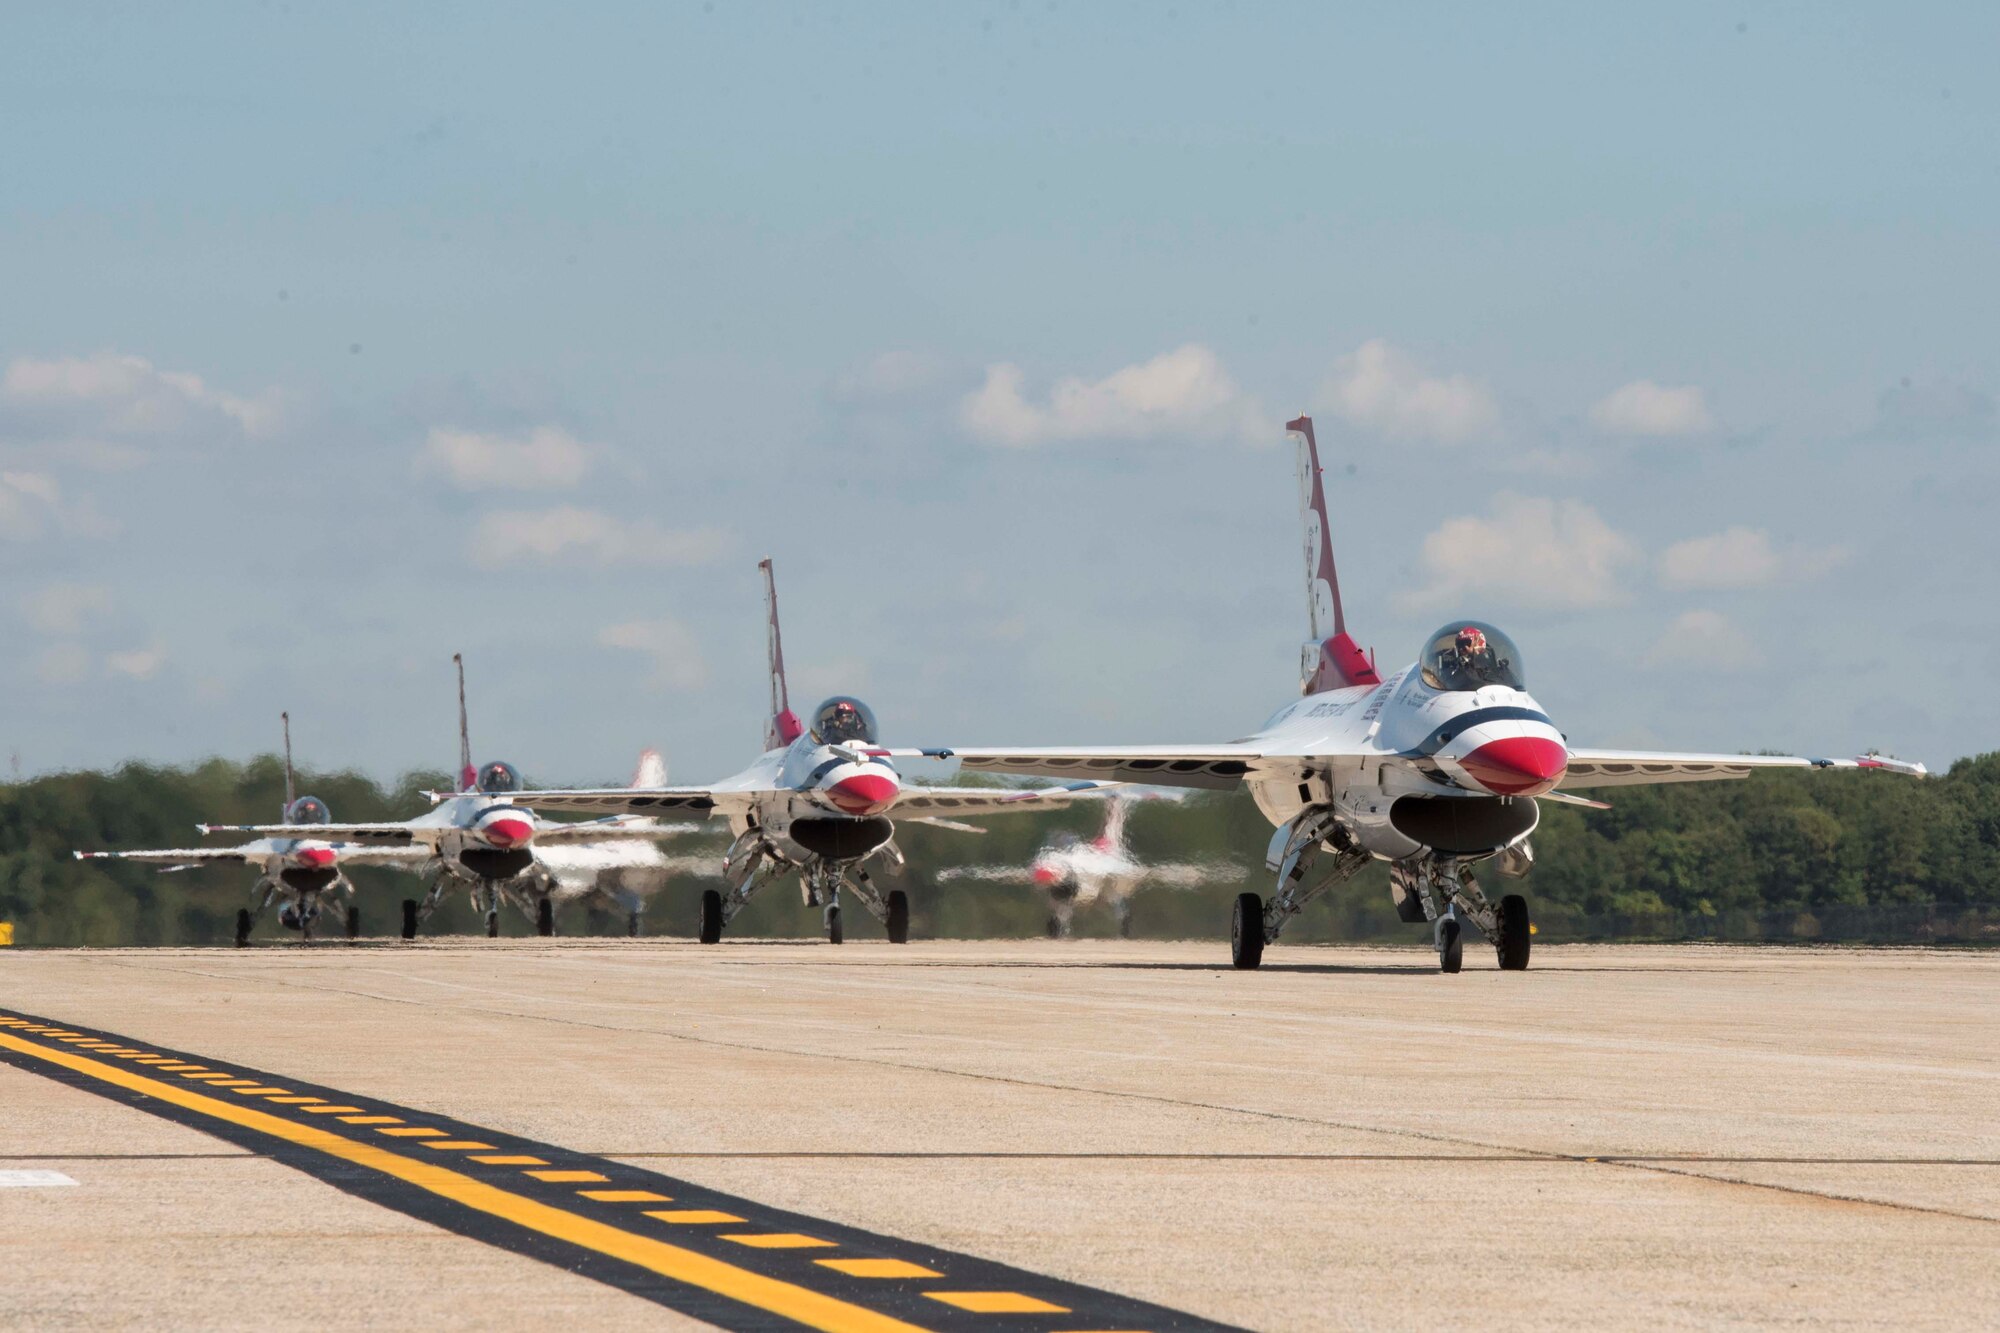 Thunderbird taxi on runway